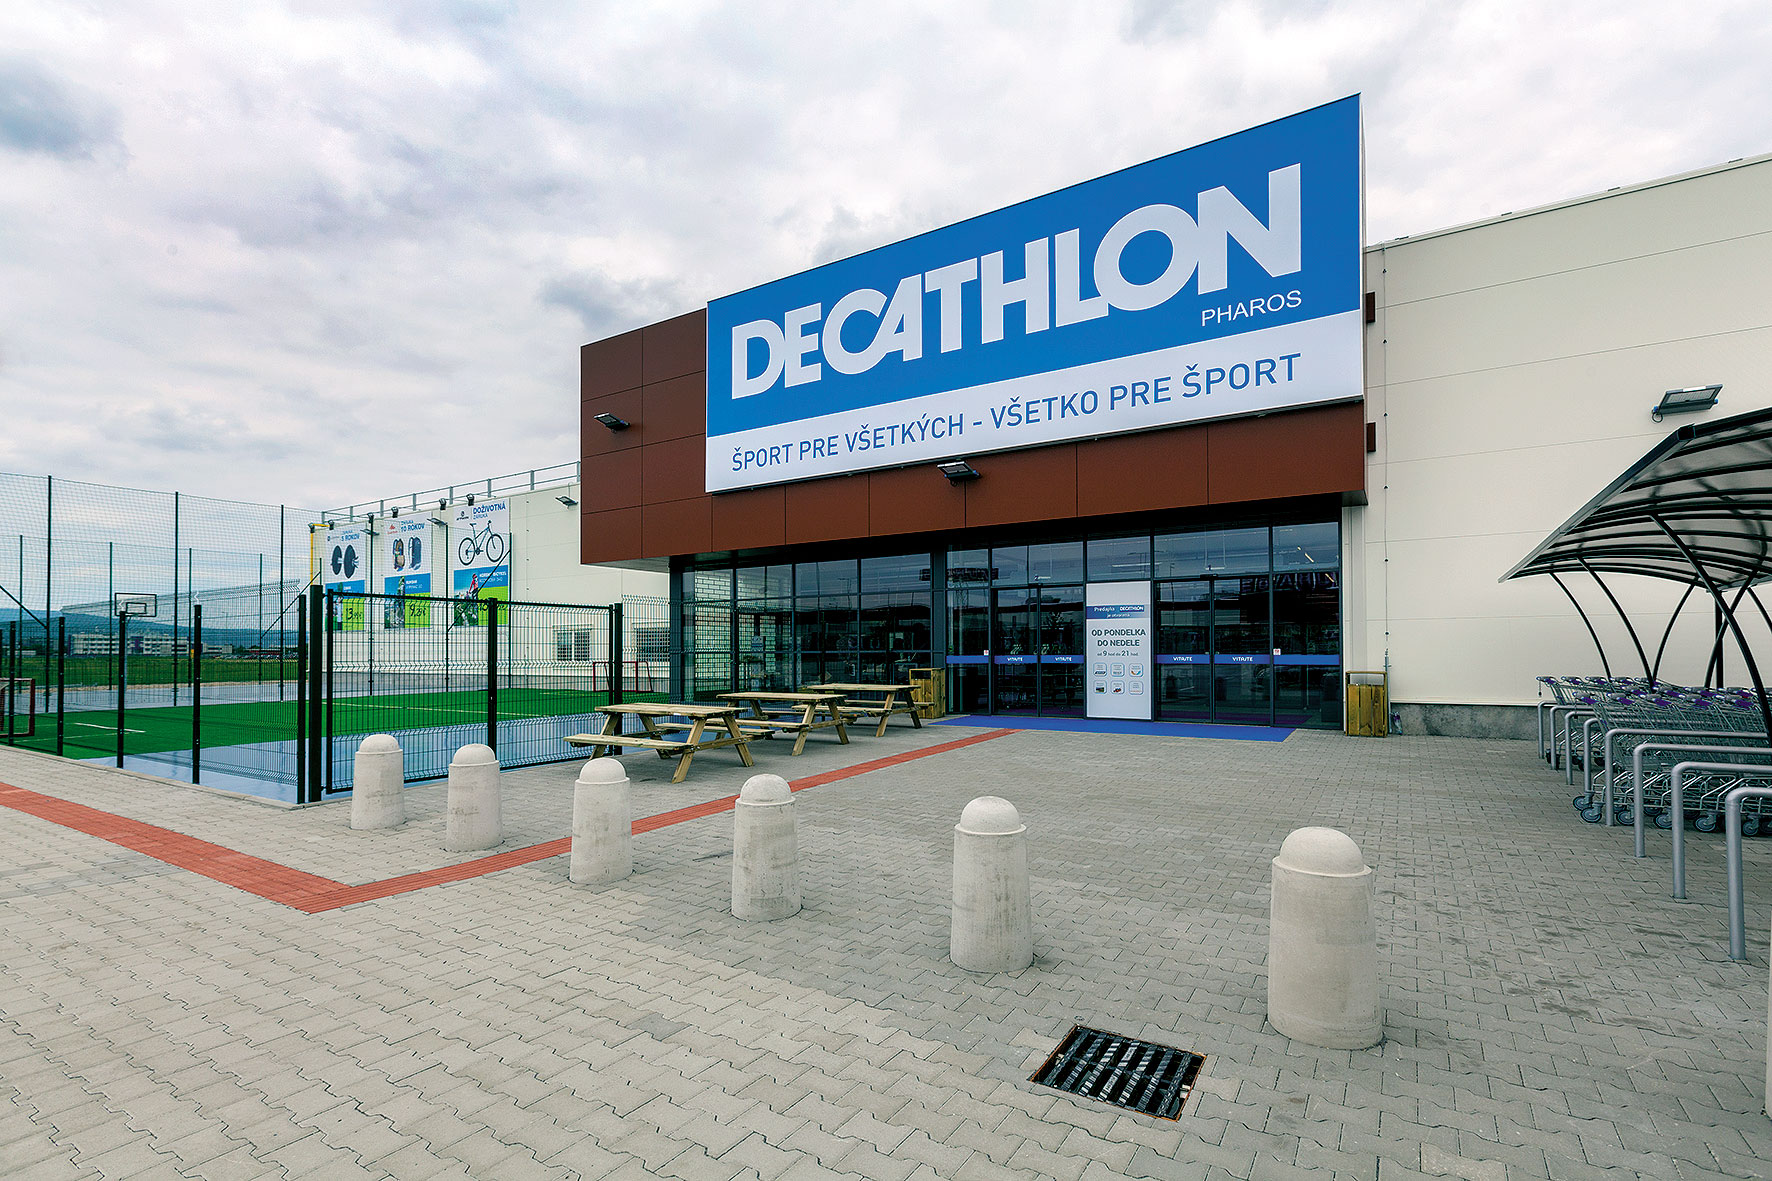 Decathlon nielen predáva medzinárodné športové značky, ale aj vyvíja a vyrába vlastné značky.